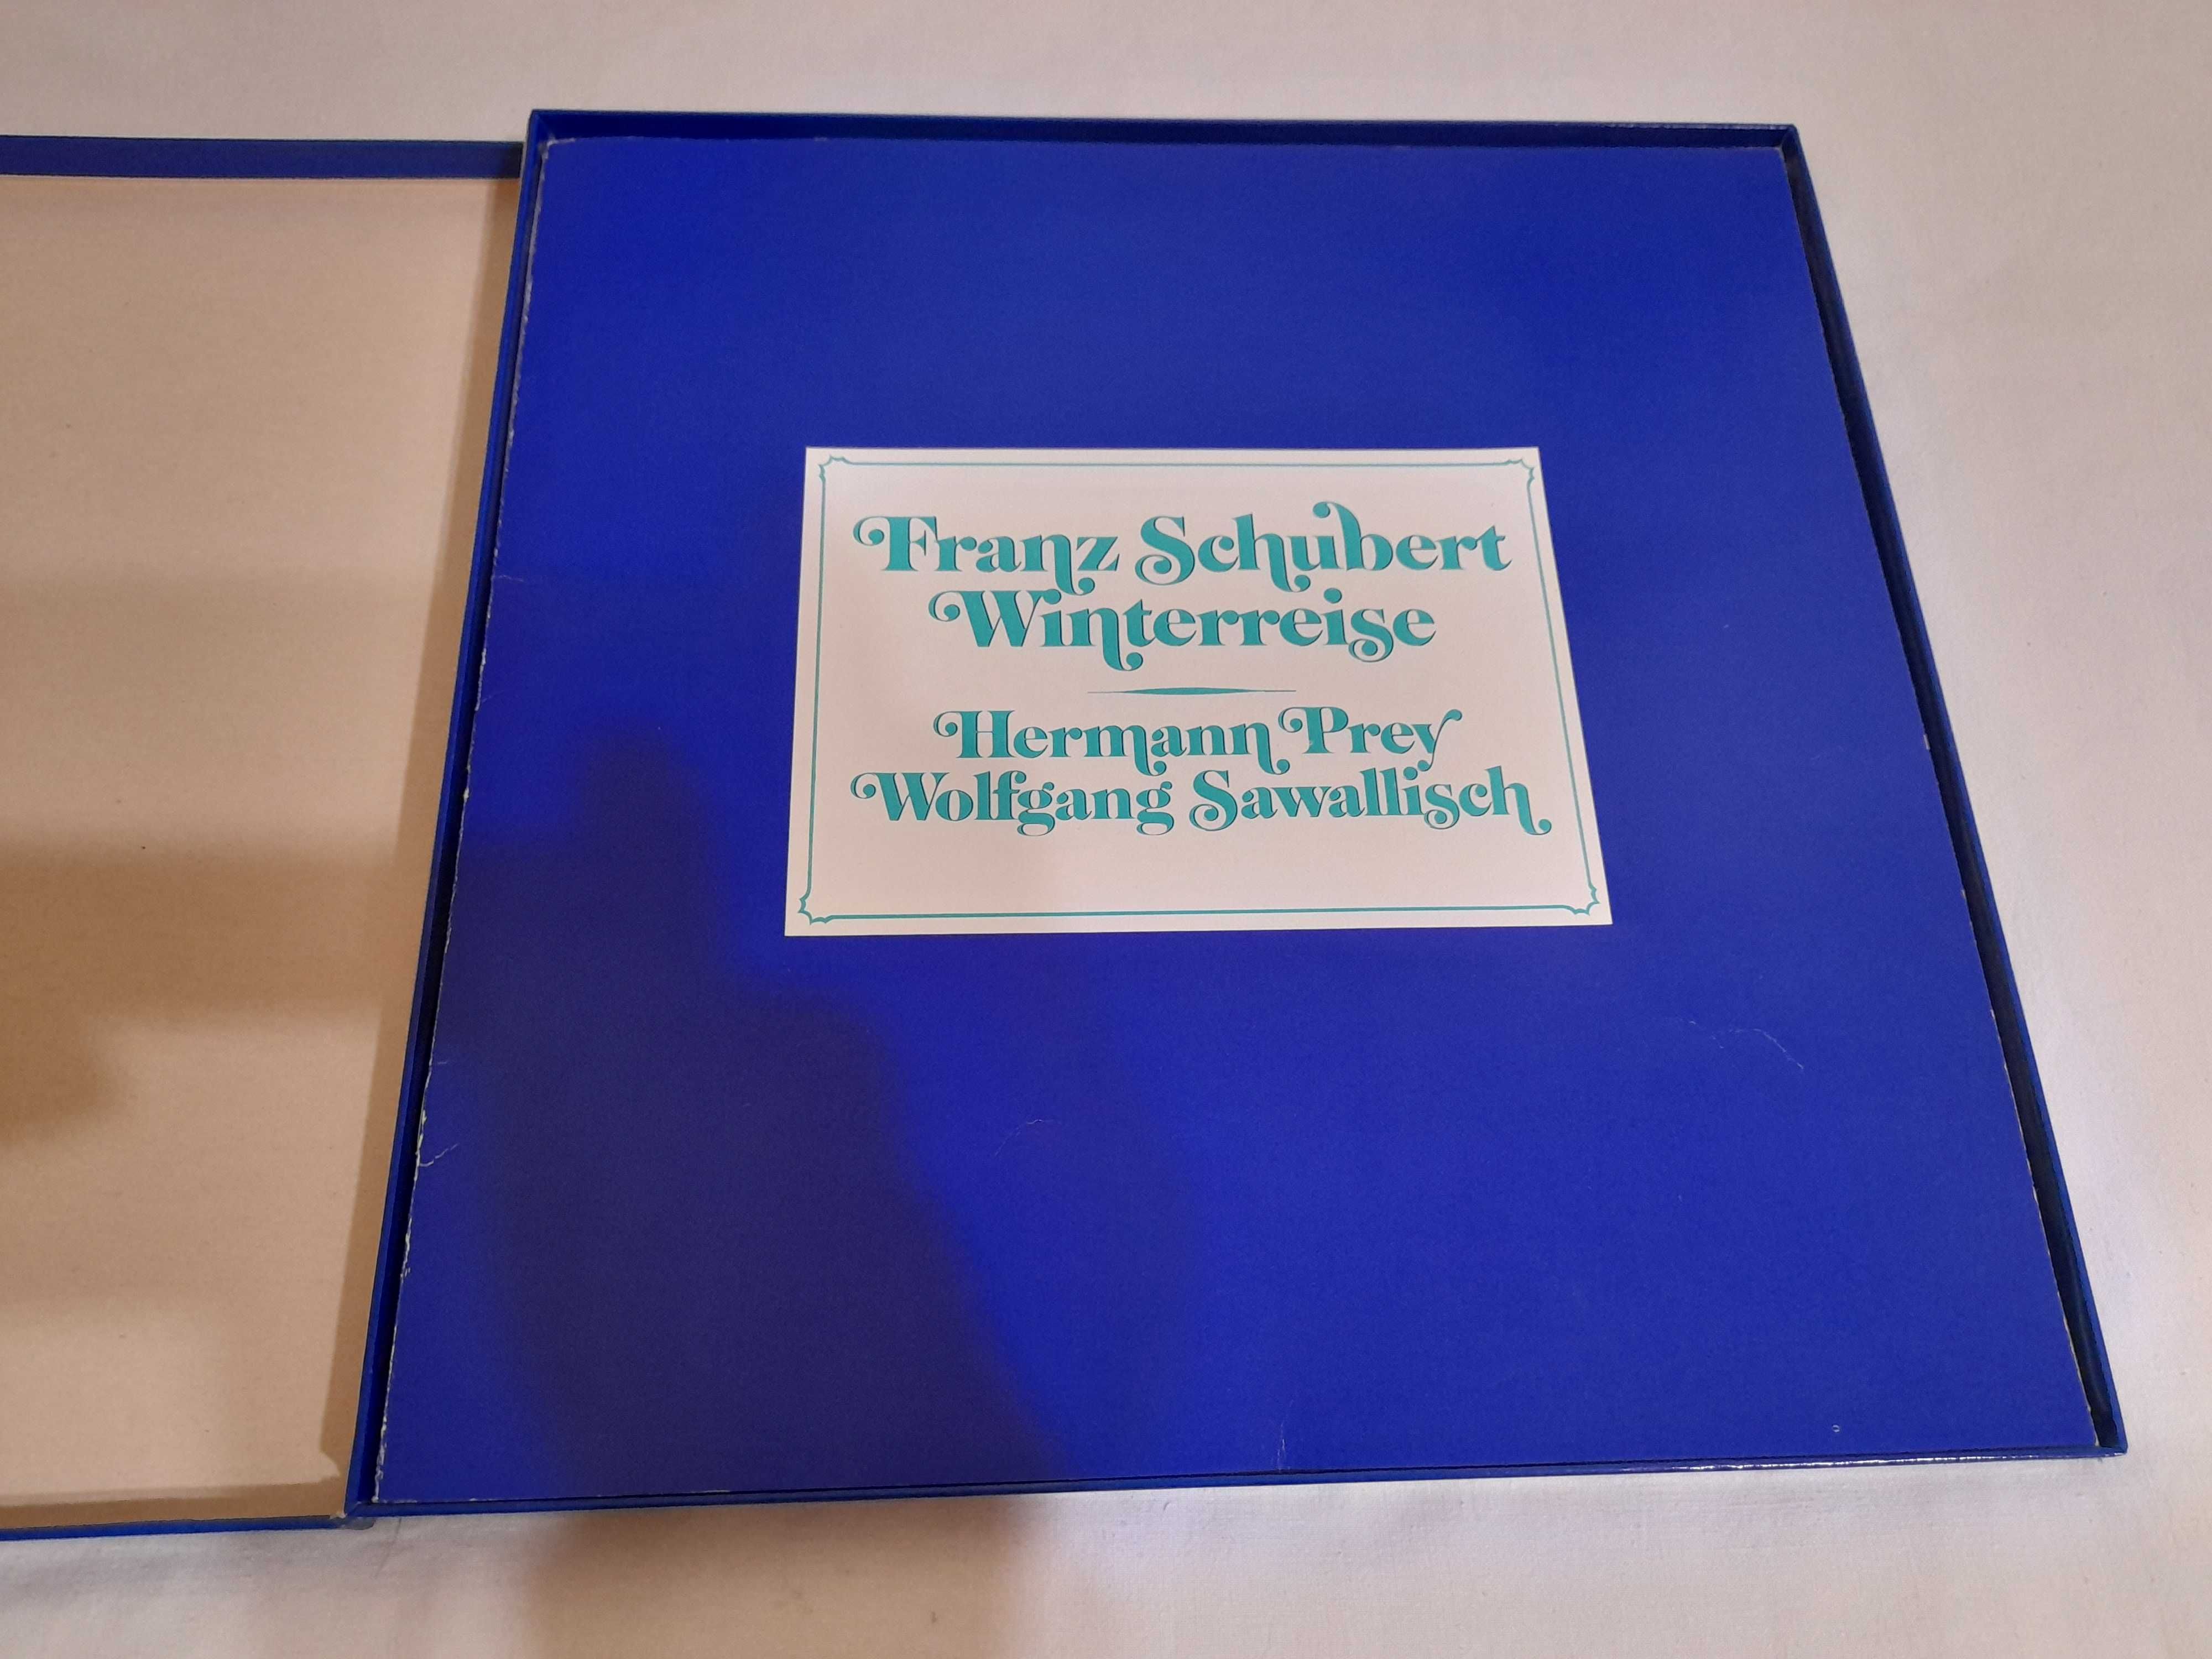 Schubert, Hermann Prey - Winterreise Box 2 x Winyl (12)